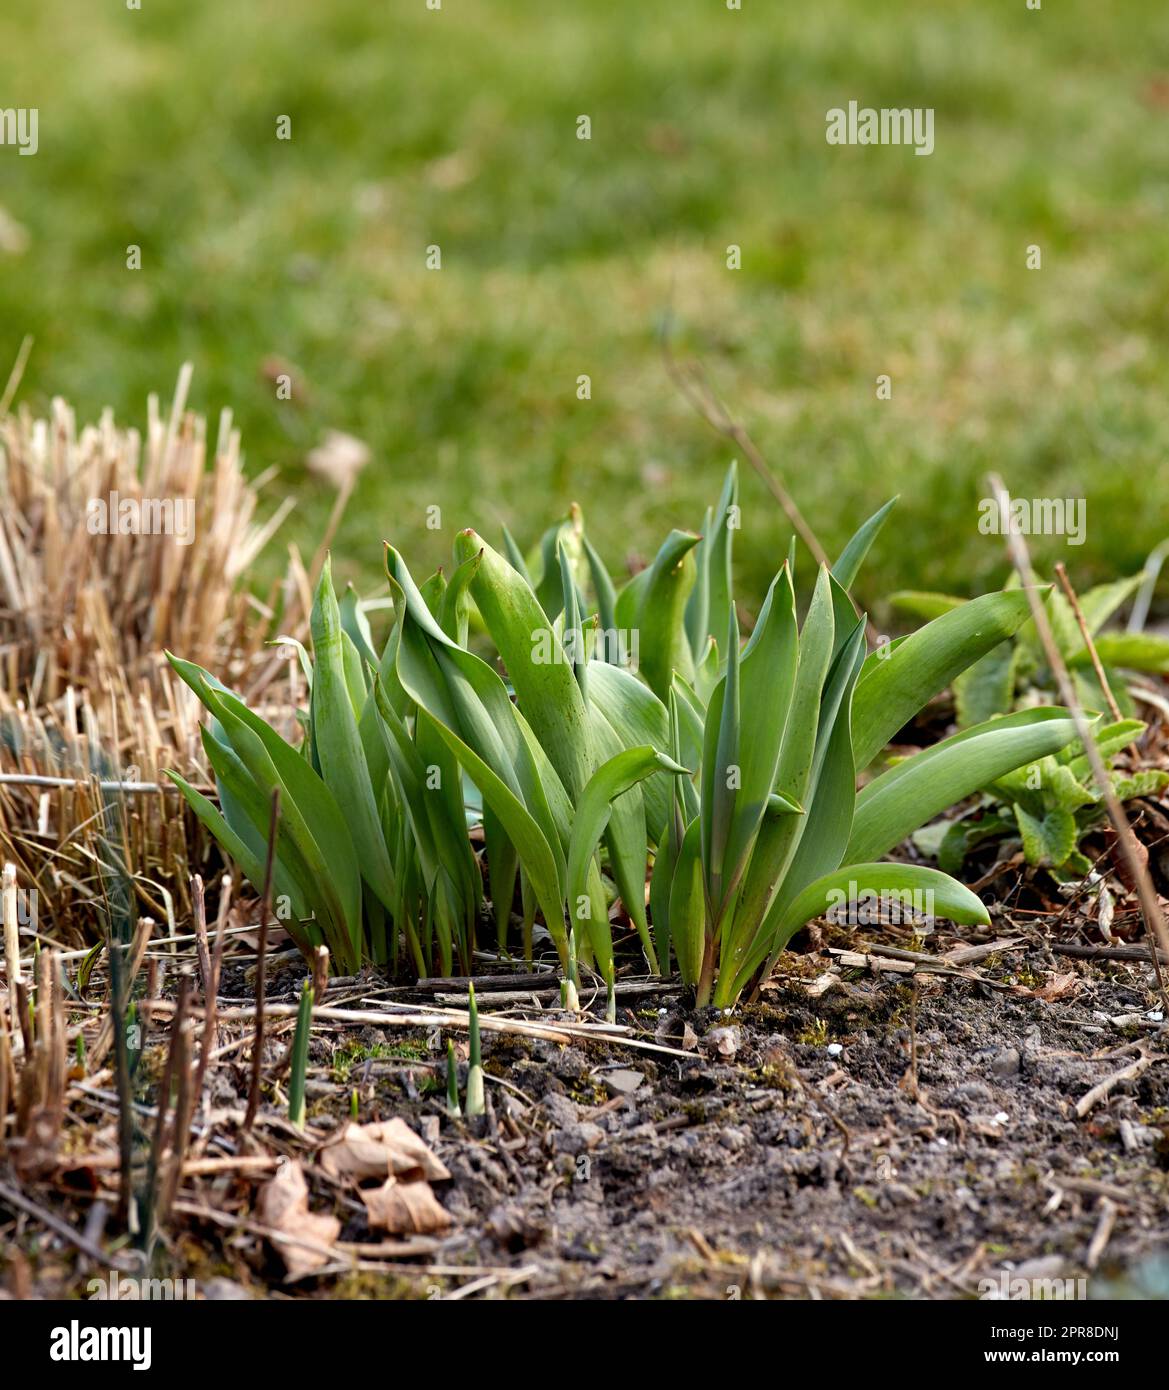 Nahaufnahme von grünen Pflanzensprossen, die in einem Garten im Boden gepflanzt wurden. Einzelheiten zum Wachstumsverlauf einer im Frühjahr wachsenden Tulpenblume. Gartenarbeit für Anfänger mit Pflanzen, die darauf warten zu blühen Stockfoto